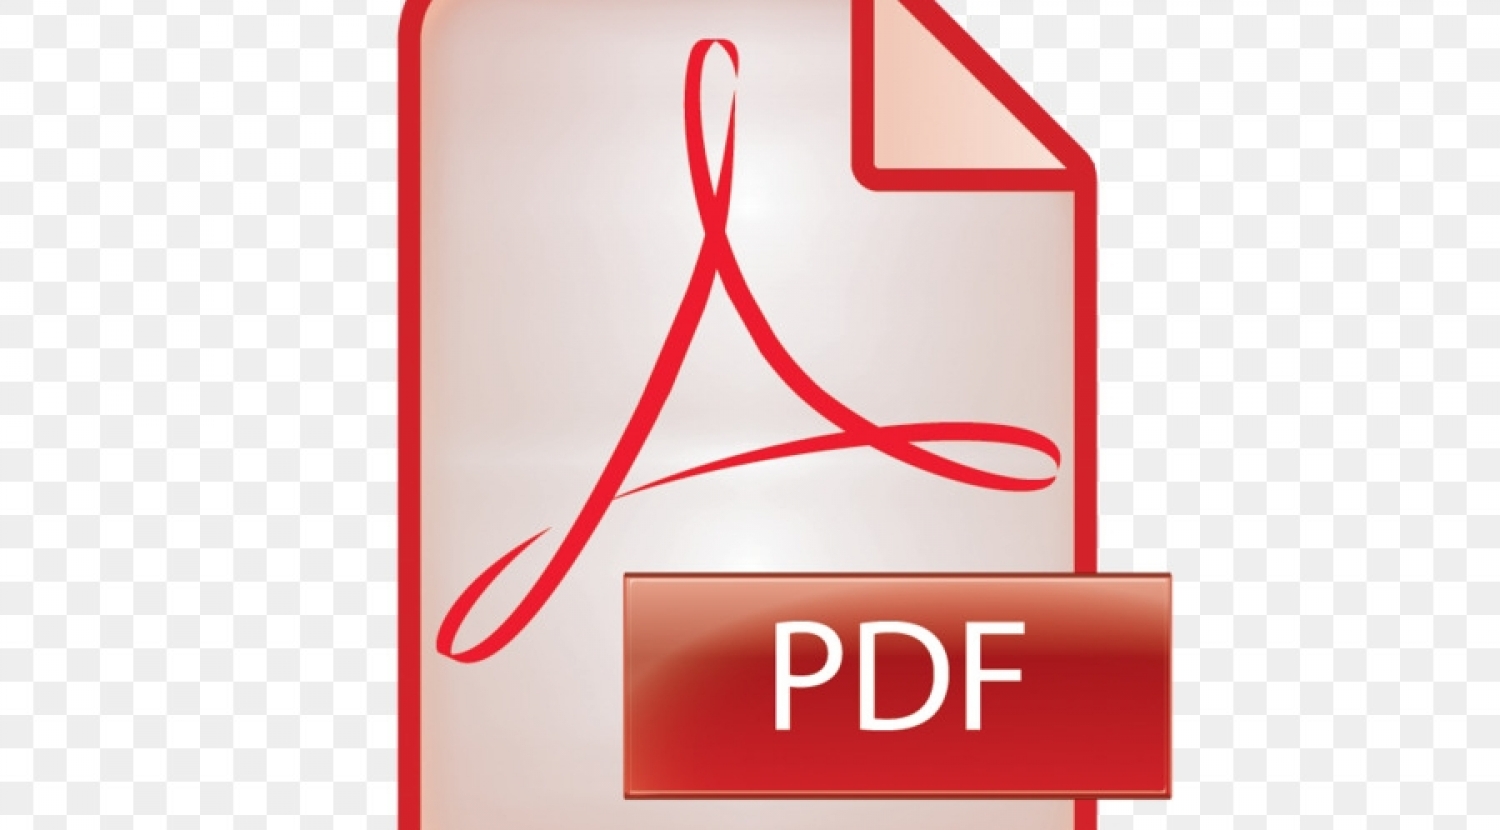 Pdf icon. Значок pdf. Пиктограмма pdf. Ярлык pdf. Пдф файл.